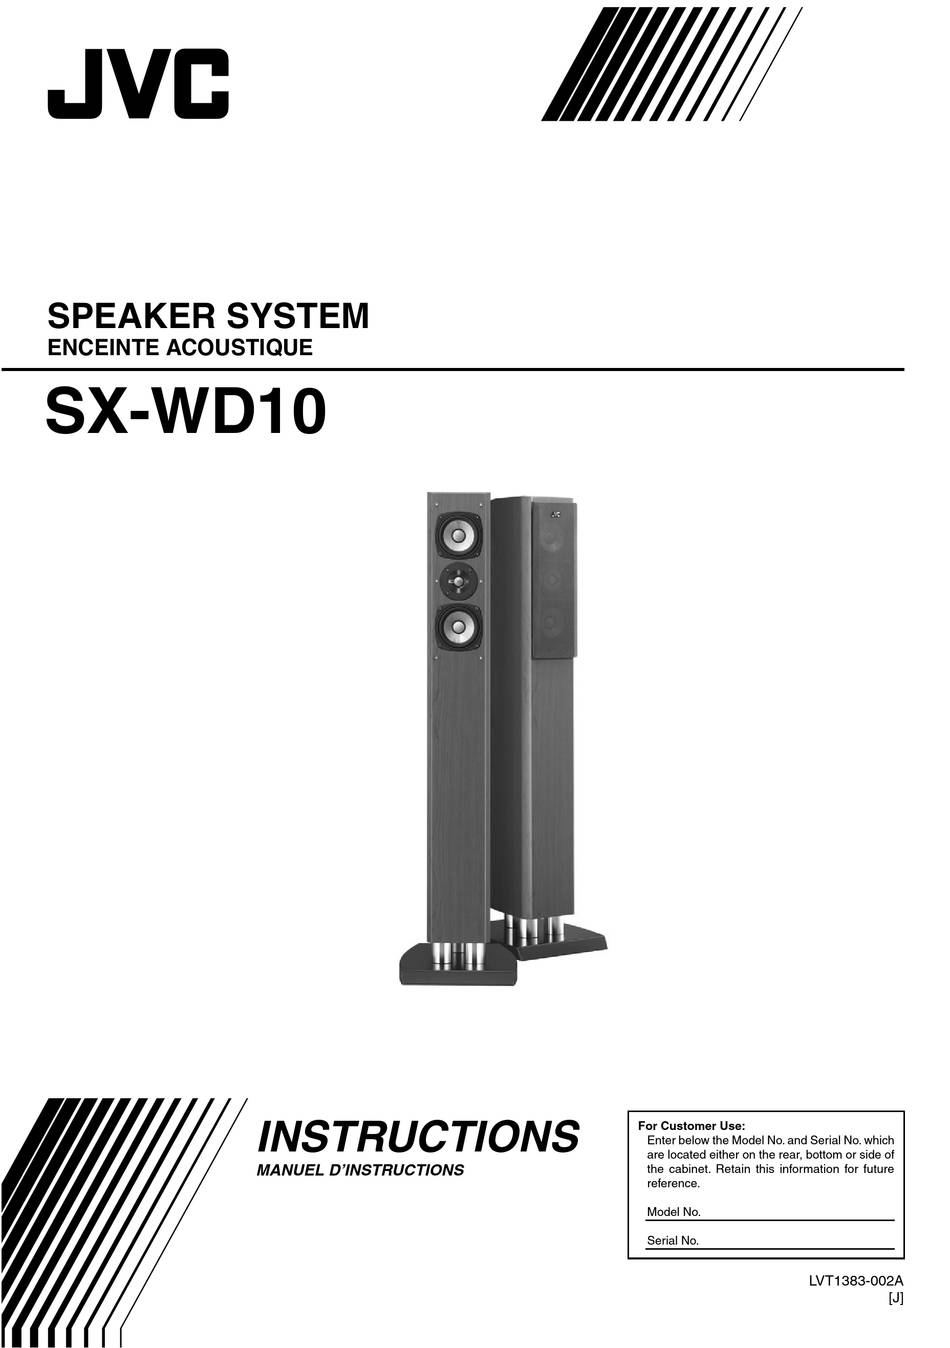 JVC SX-WD10